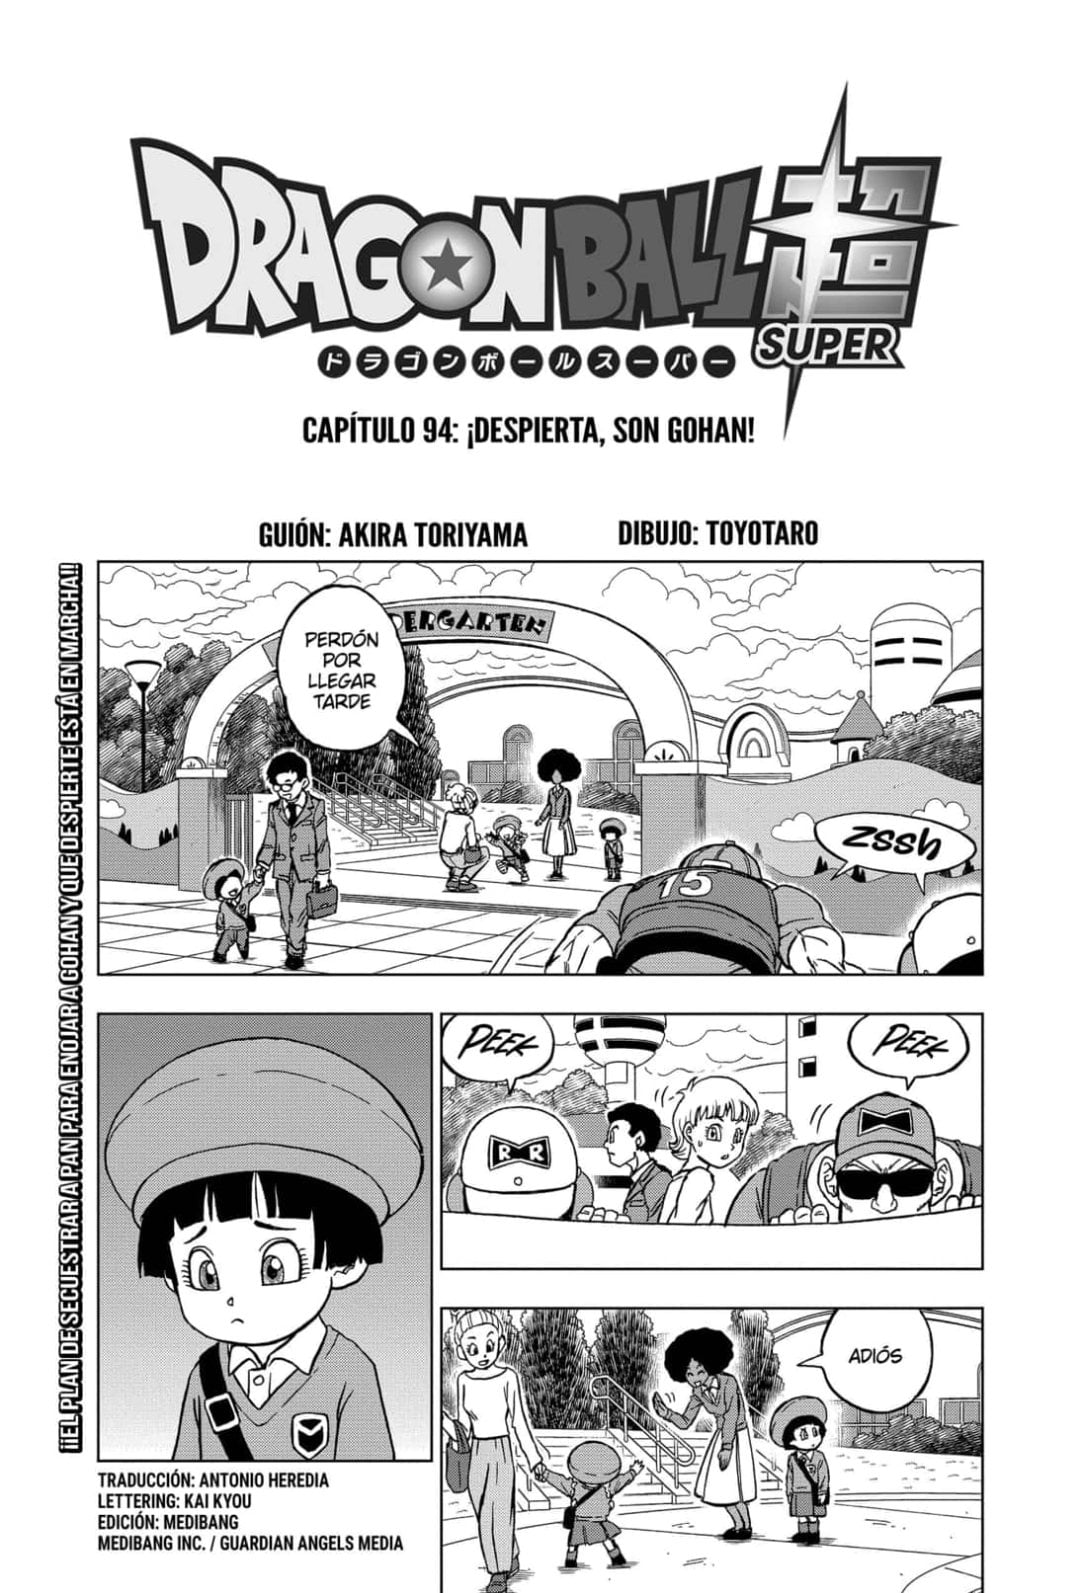 Dragon Ball Super, episodio 94: ¿dónde y cómo leer la versión en